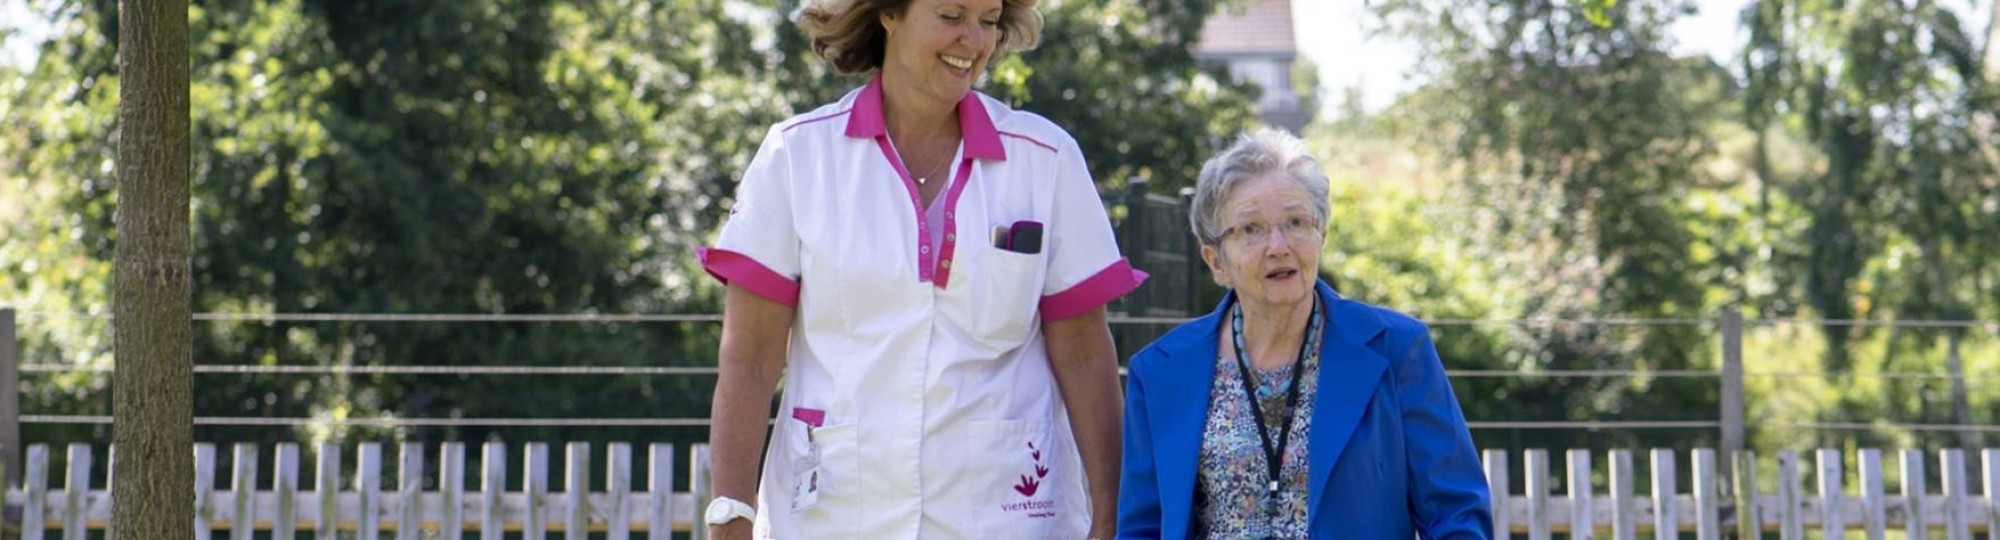 Zorgverlener wandelt met oudere dame in de tuin van een verpleeghuis.